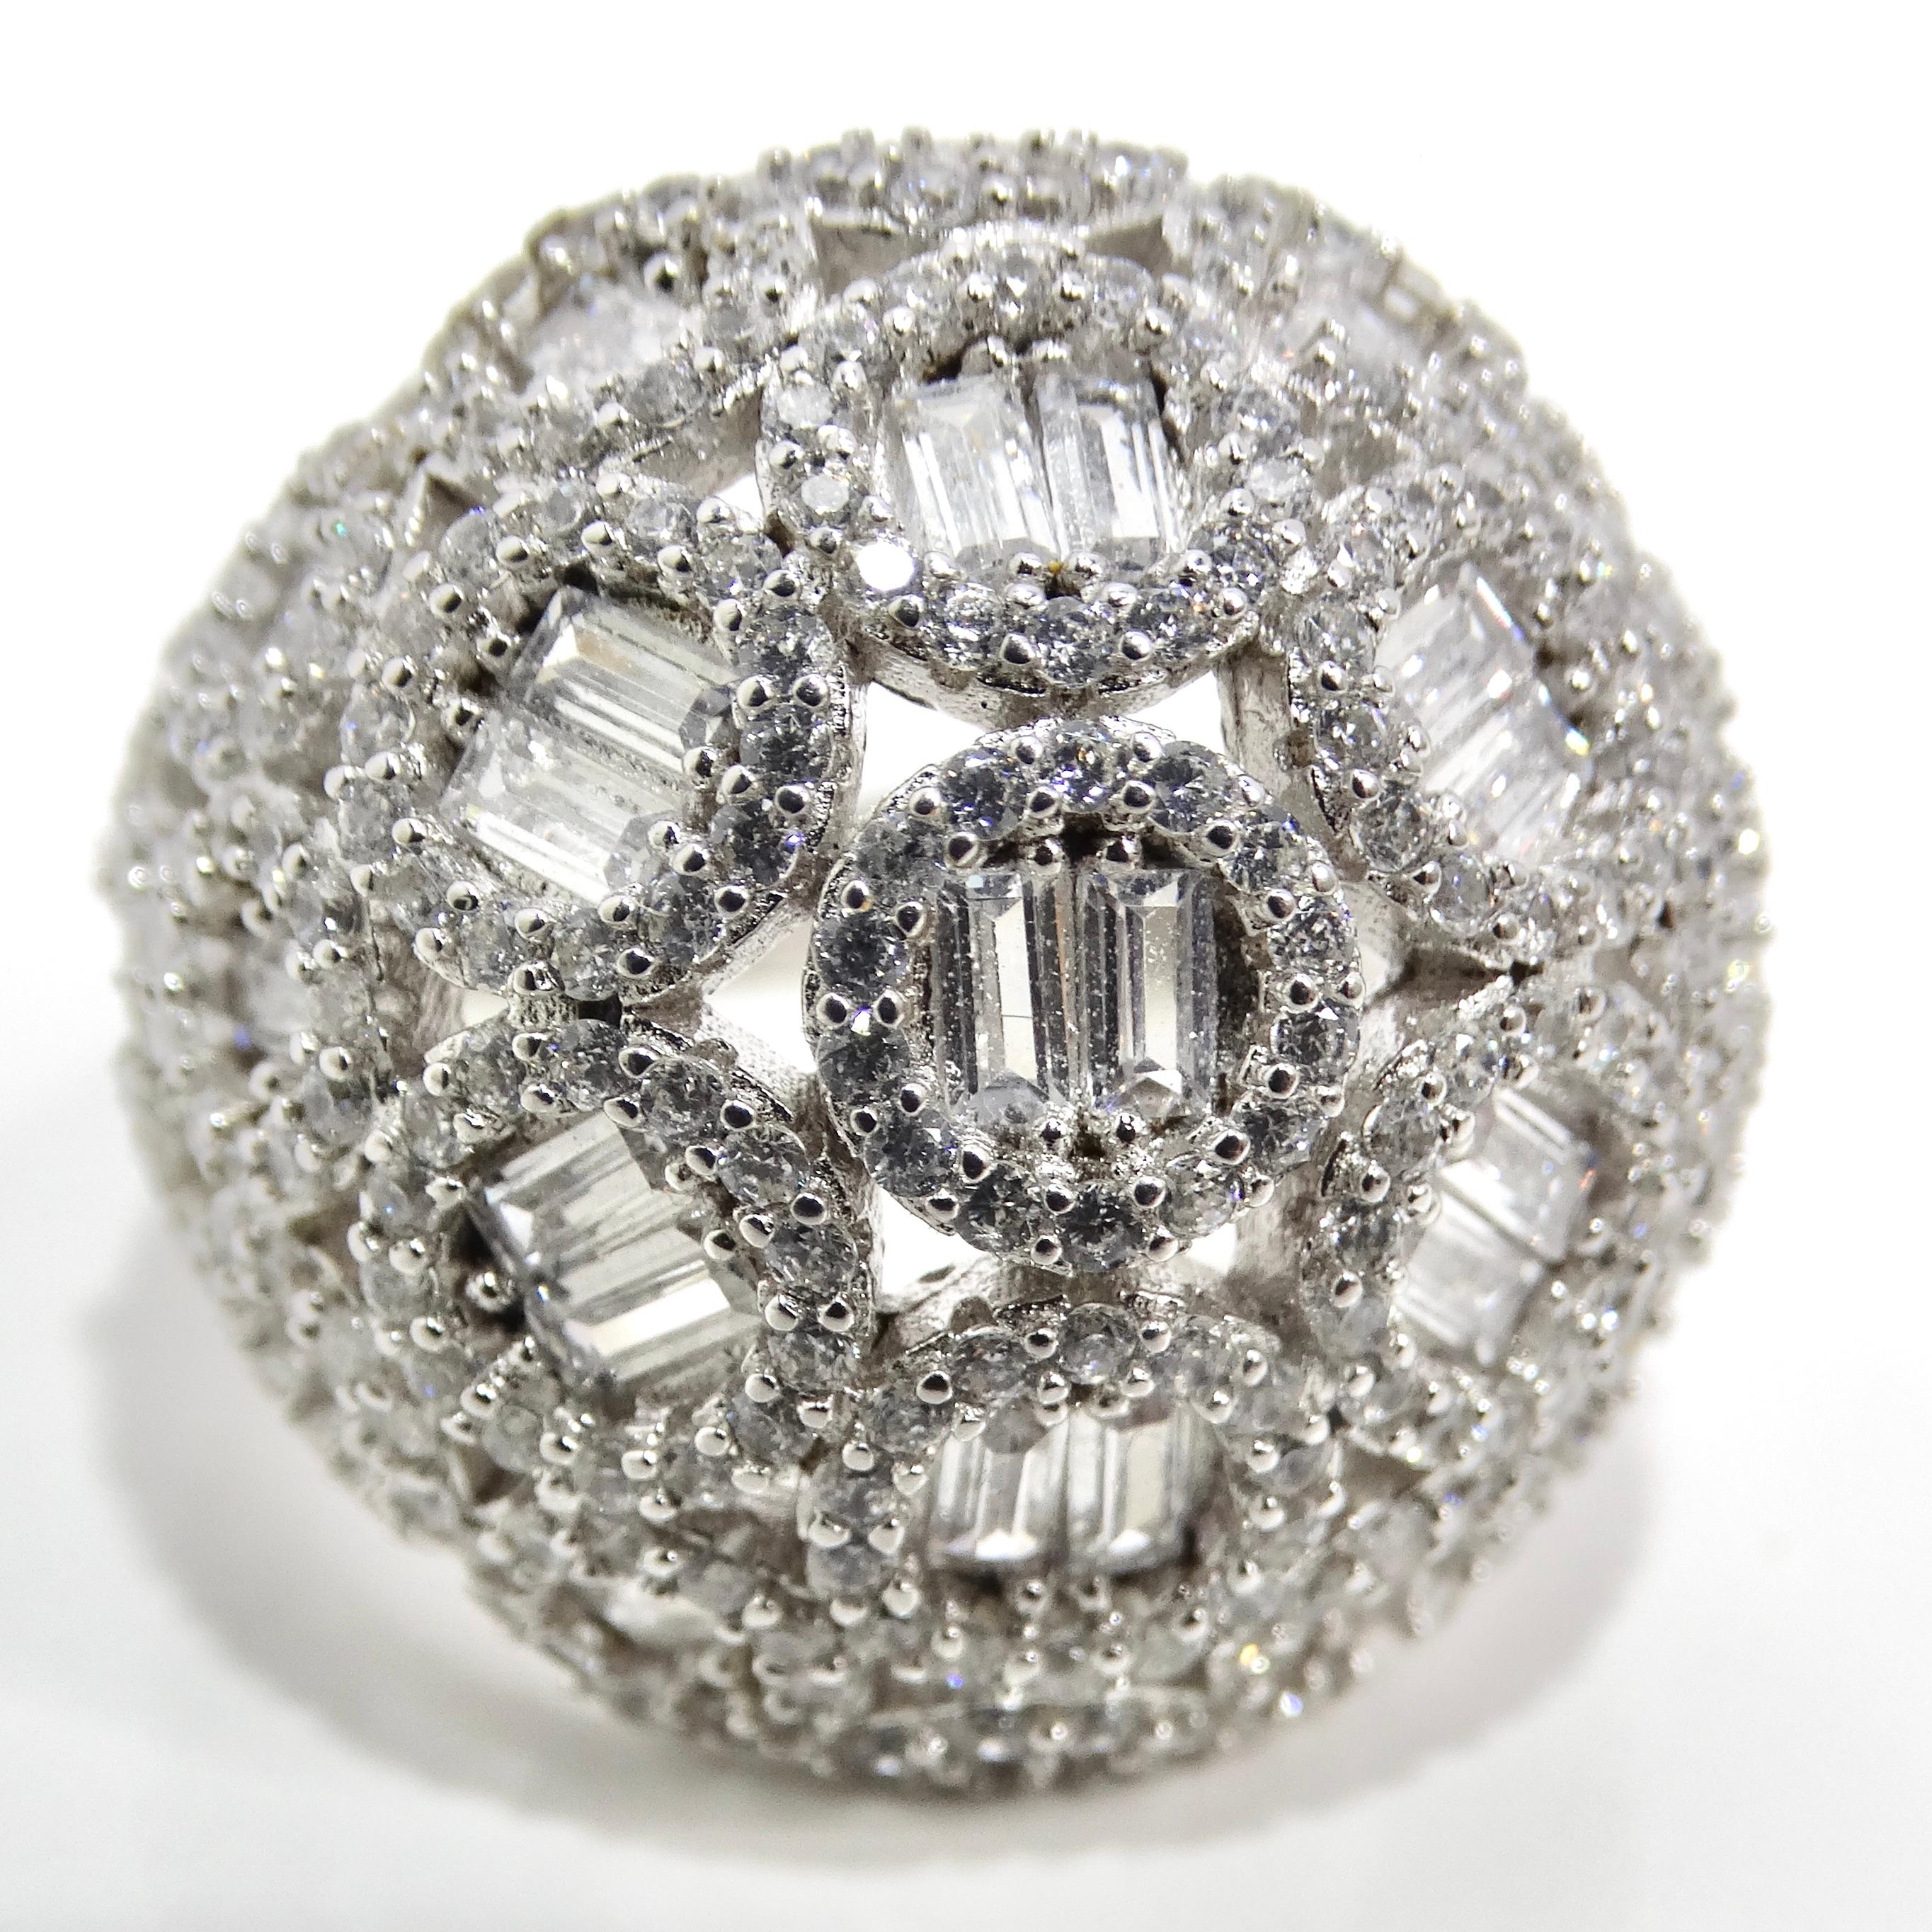 Schwelgen Sie im nostalgischen Charme der 1990er Jahre mit dem faszinierenden 1990s Silver Swarovski Crystal Dome Ring. Dieses exquisite Schmuckstück nimmt Sie mit seinem atemberaubenden Design und seiner zeitlosen Eleganz mit auf eine Reise in die